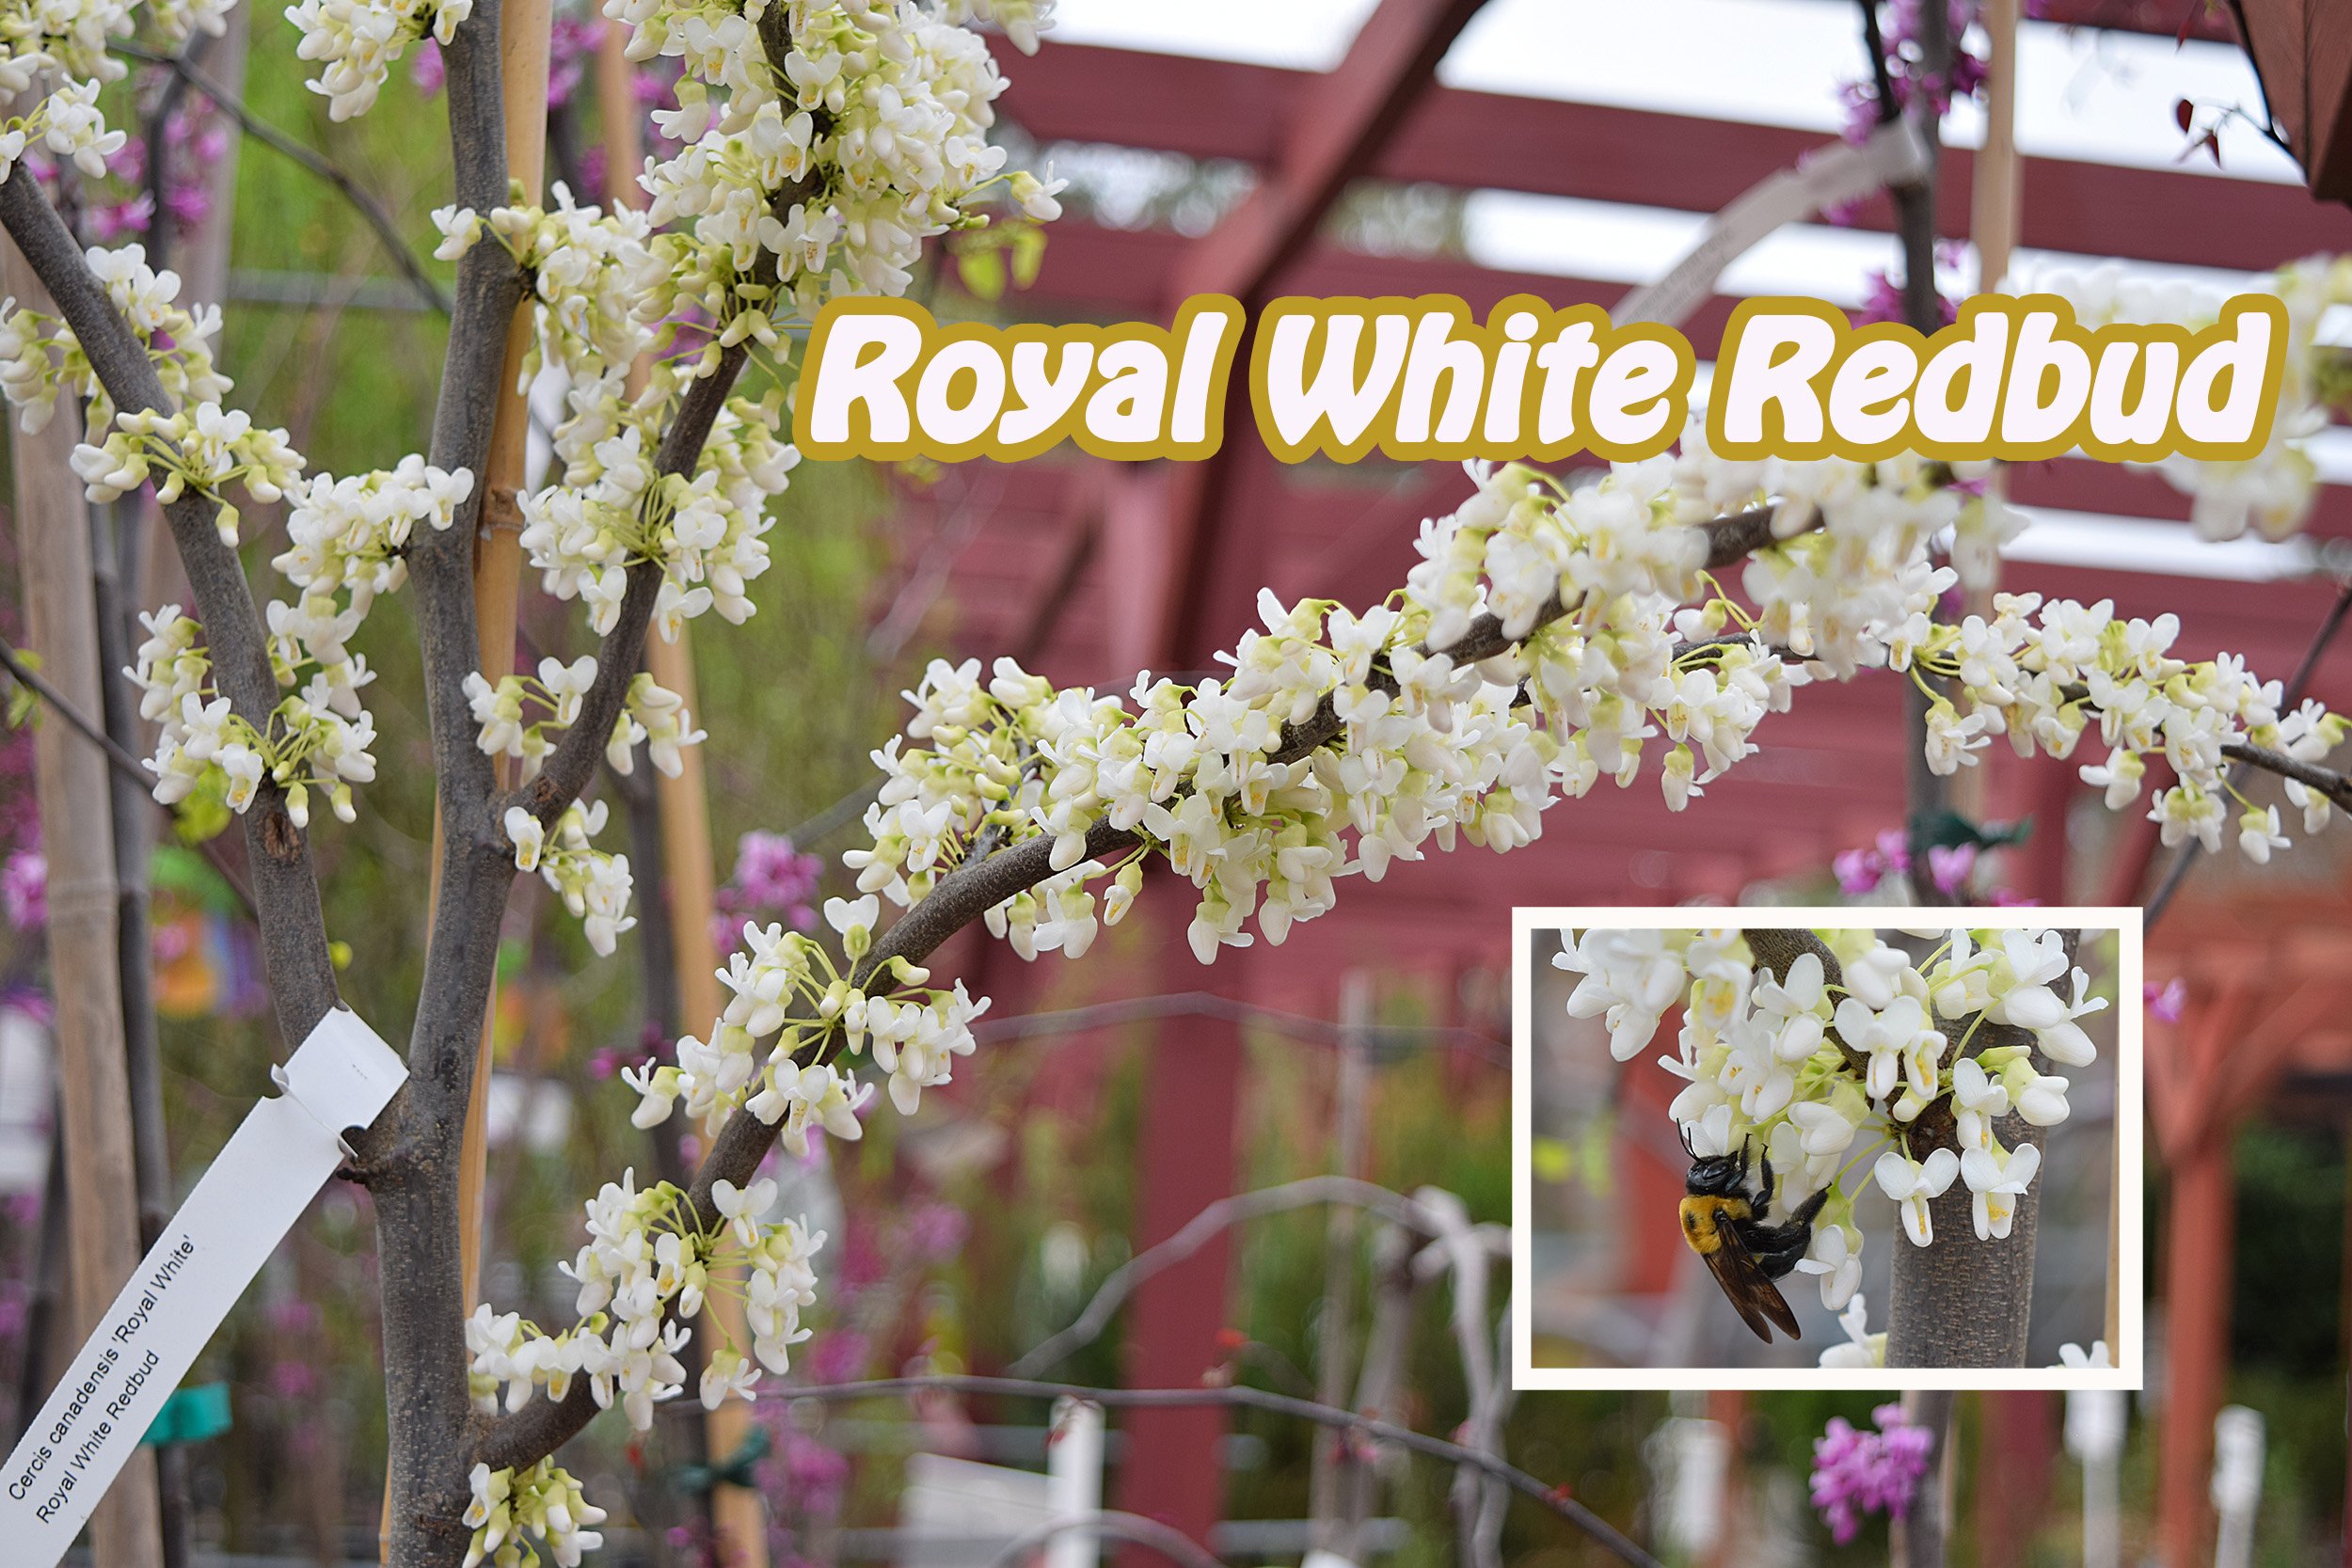 royal white redbud.jpg